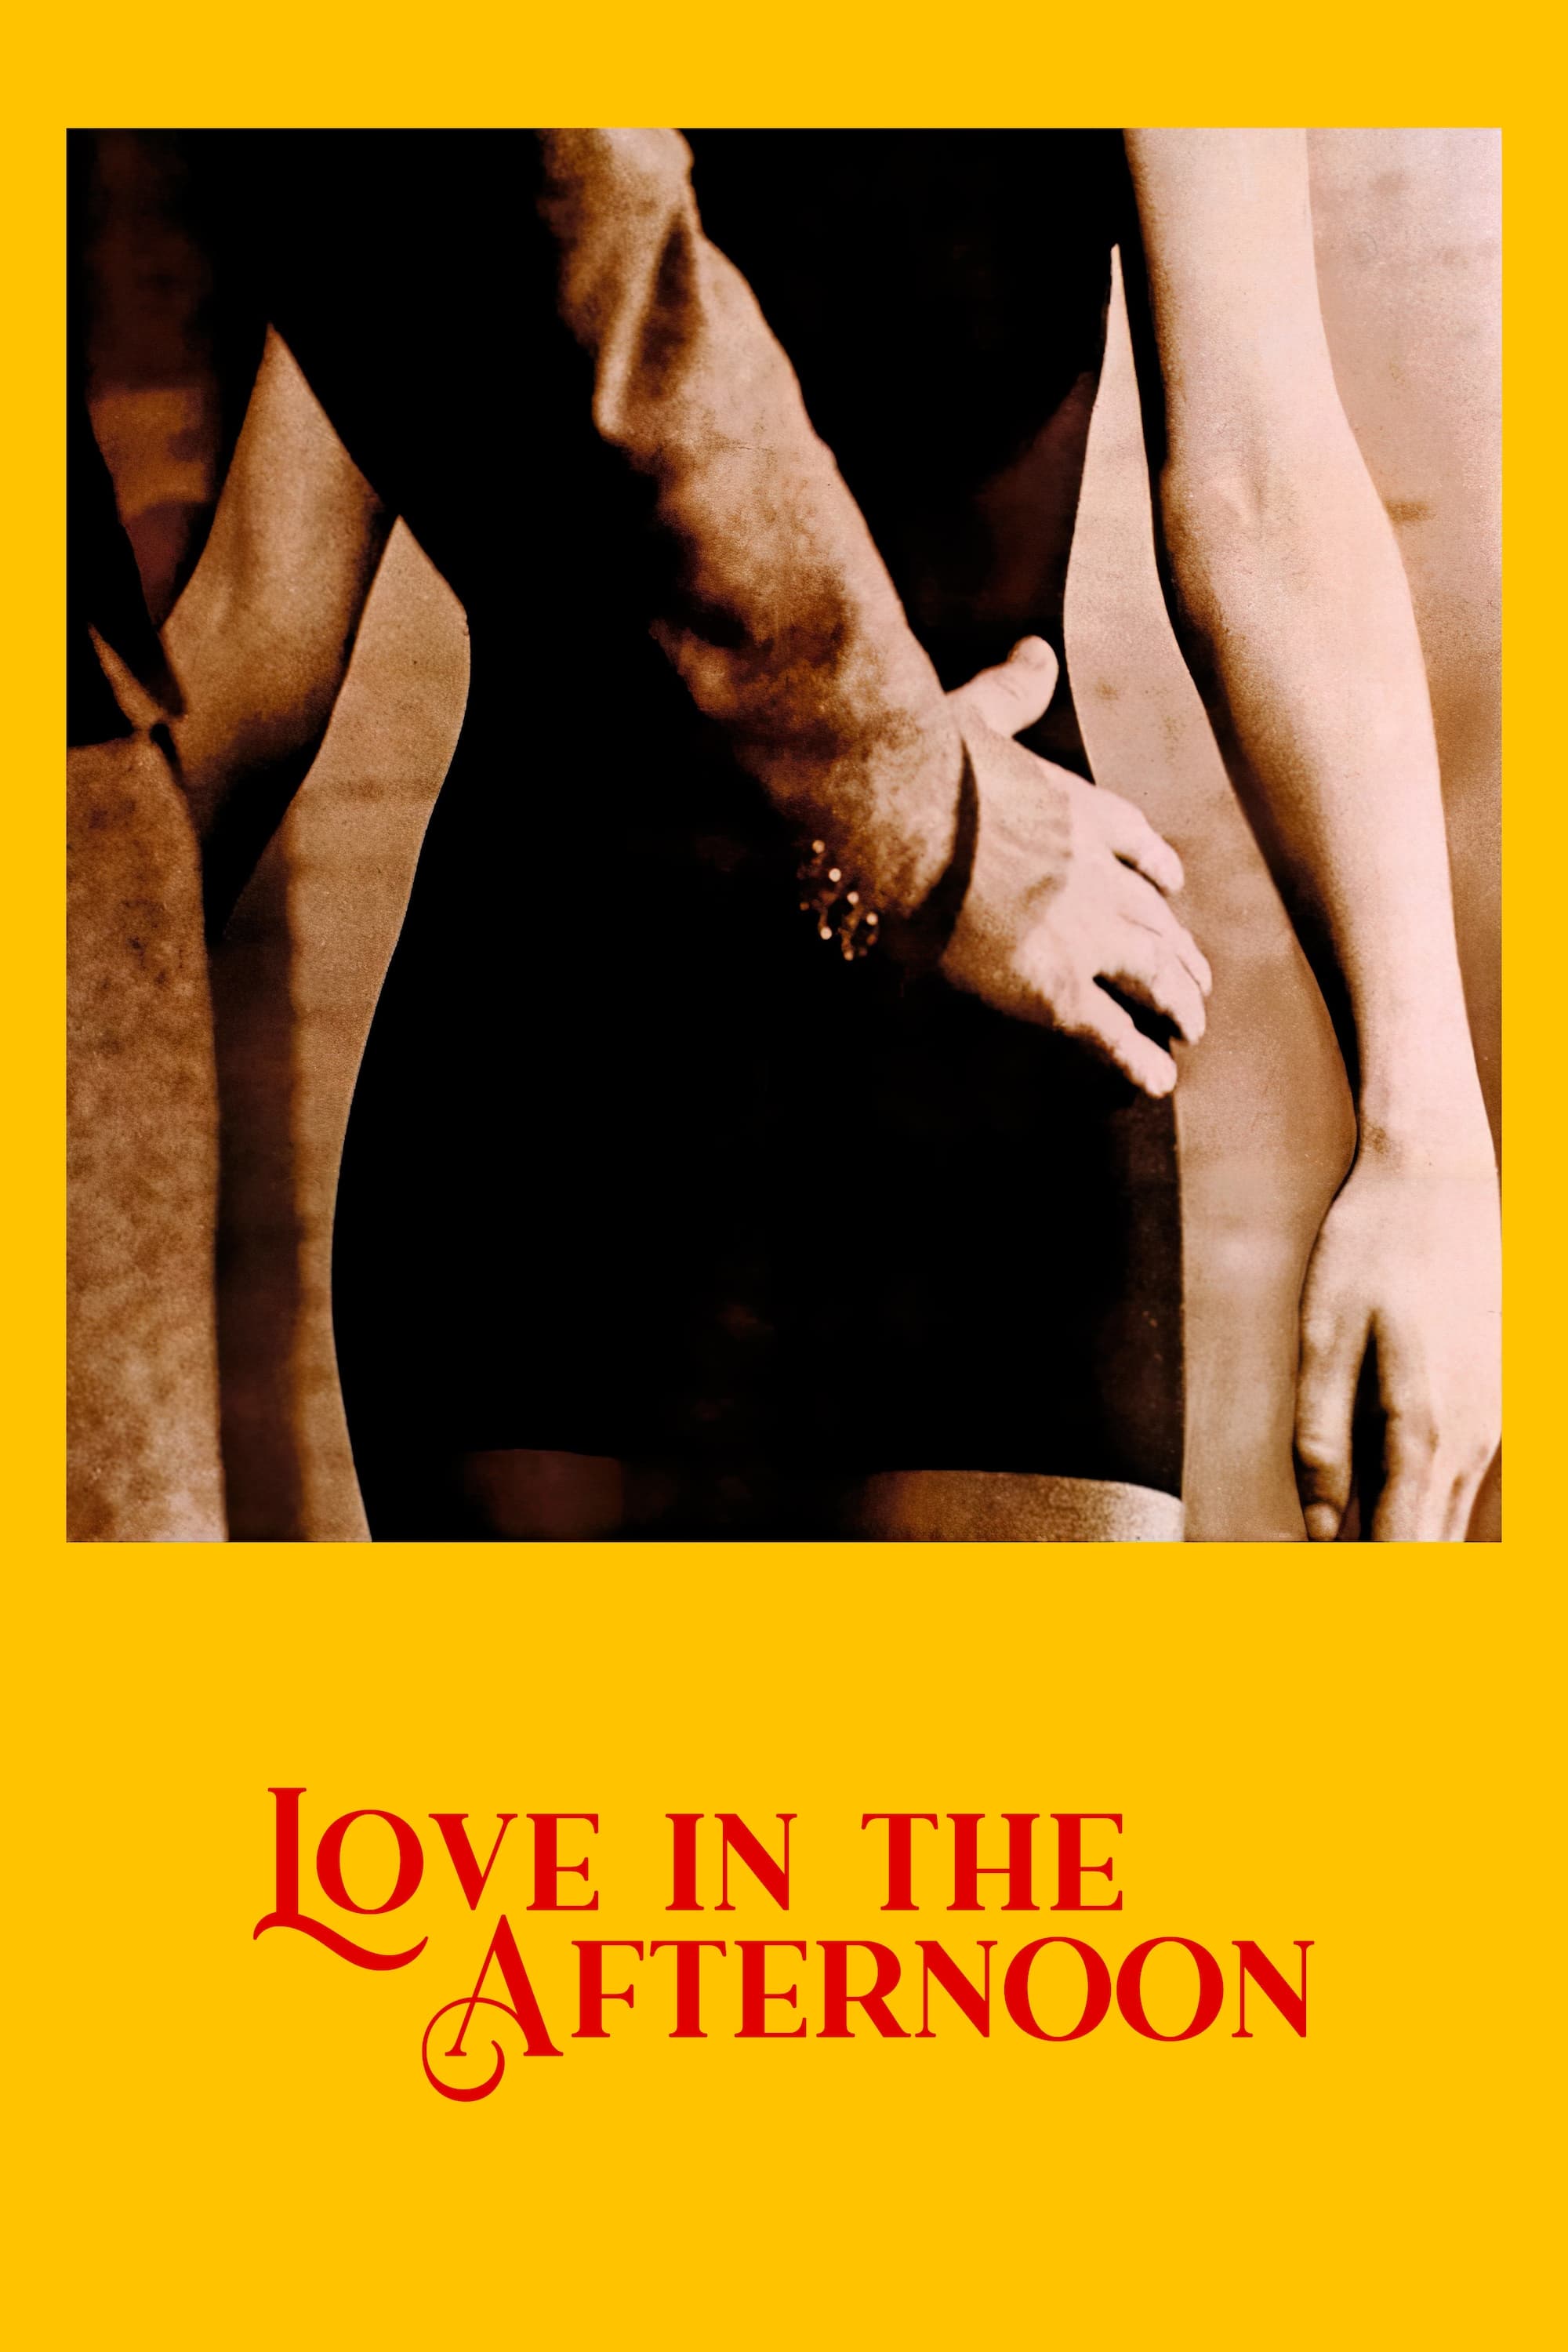 Die Liebe am Nachmittag (1972)